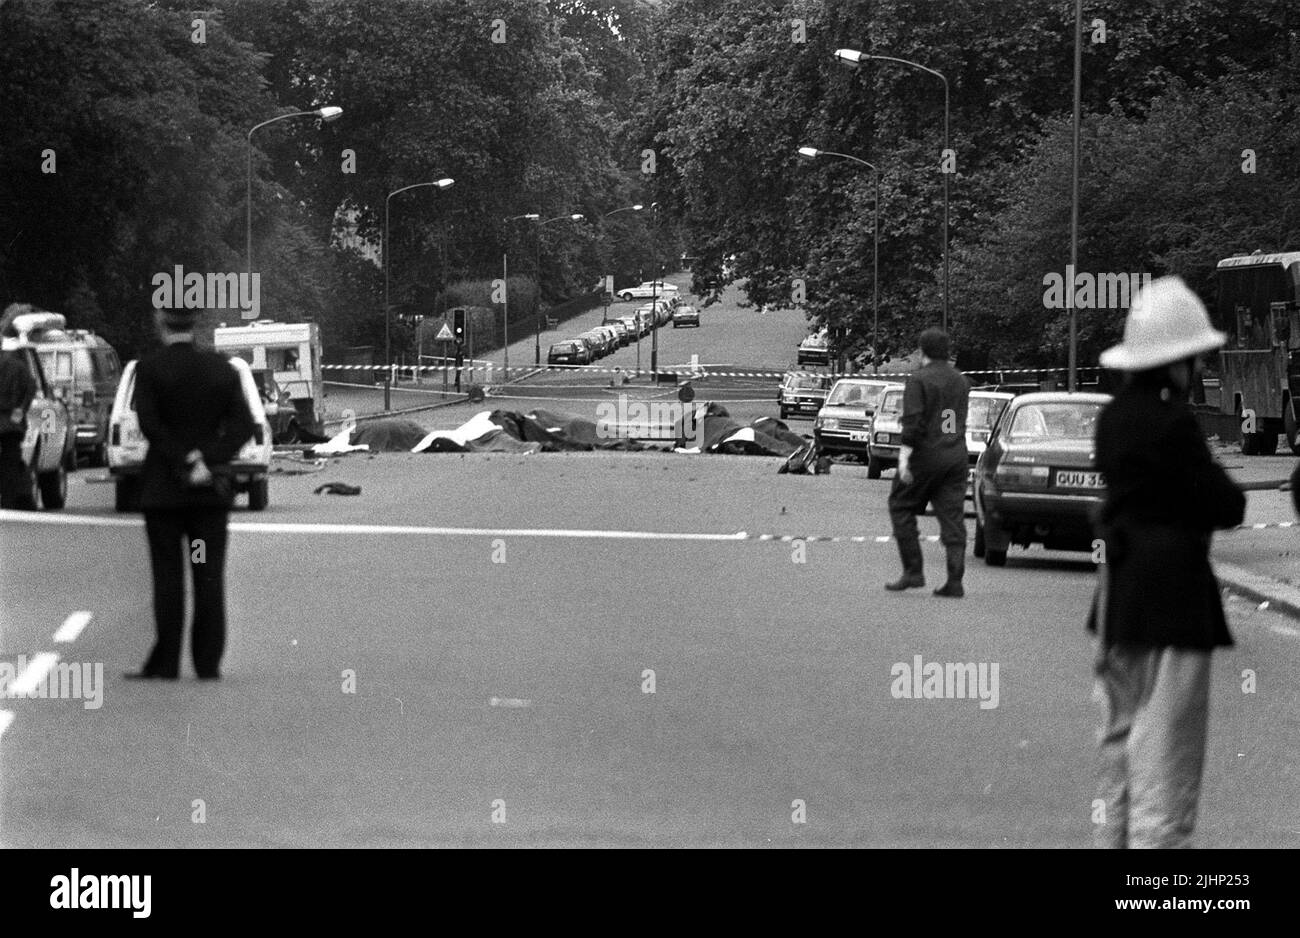 Foto di archivio datata 20/7/1982 di cavalli morti si trovano coperti dopo un'esplosione di un'automobile intrappolata vicino alle caserme di Hyde Park. Le famiglie di soldati uccisi negli attentati di Hyde Park e del Regent's Park IRA hanno raccontato come la loro sofferenza rimanga inalterata 40 anni dopo. In totale 11 militari sono morti nei due attacchi che si sono verificati a Londra il 20 1982 luglio a poche ore di distanza l'uno dall'altro. Data di emissione: Mercoledì 20 luglio 2022. Foto Stock